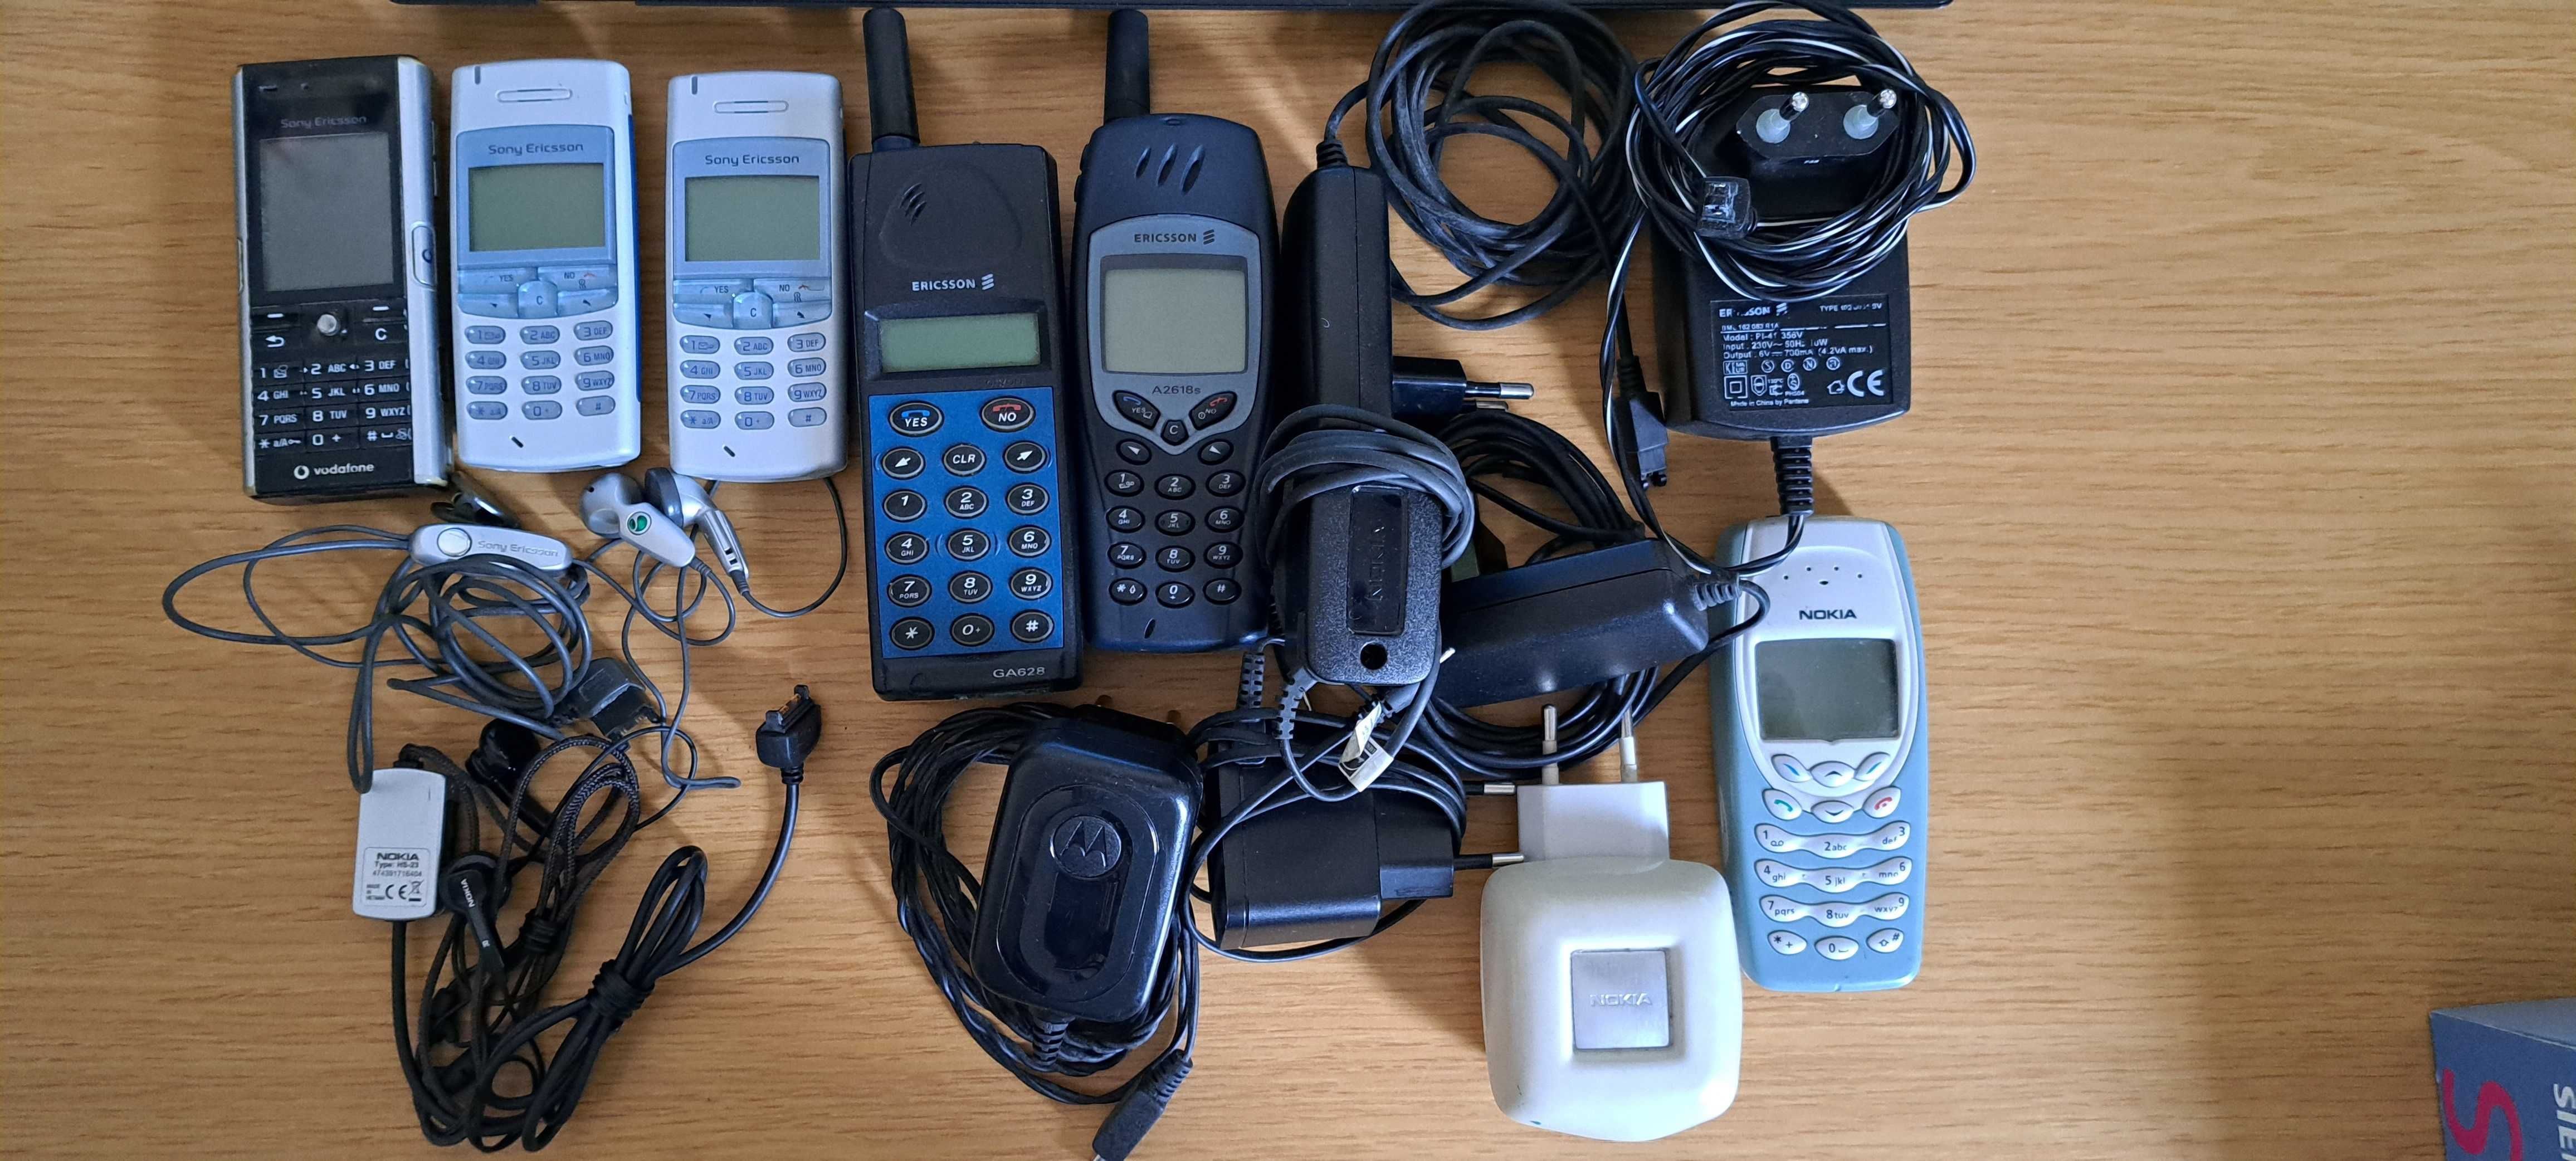 Telemóveis Ericsson, Sony Ericsson e Nokia, com acessórios